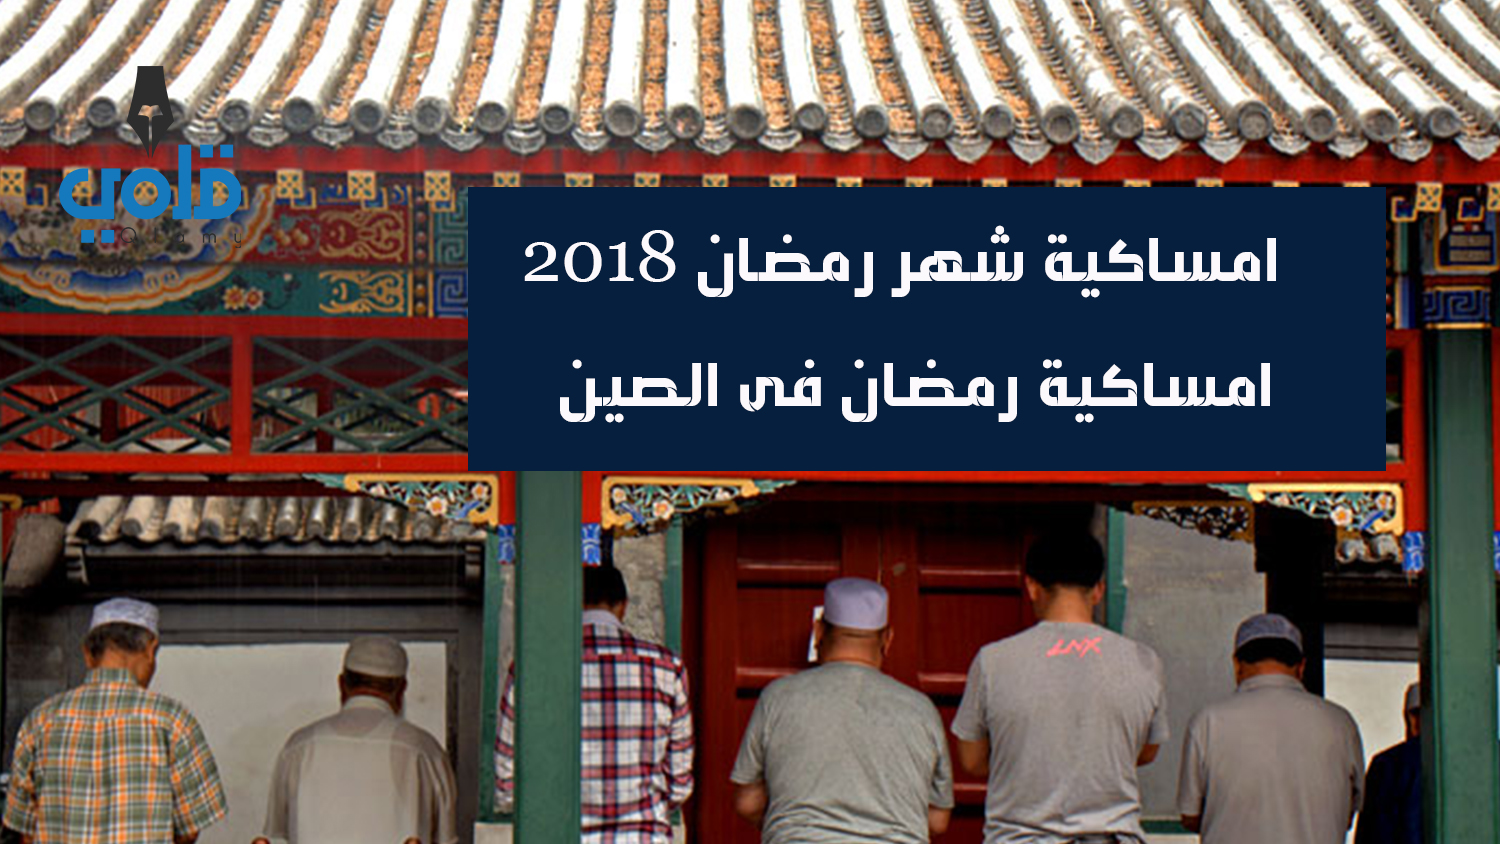 امساكية شهر رمضان 2018 1439 - امساكية رمضان فى الصين